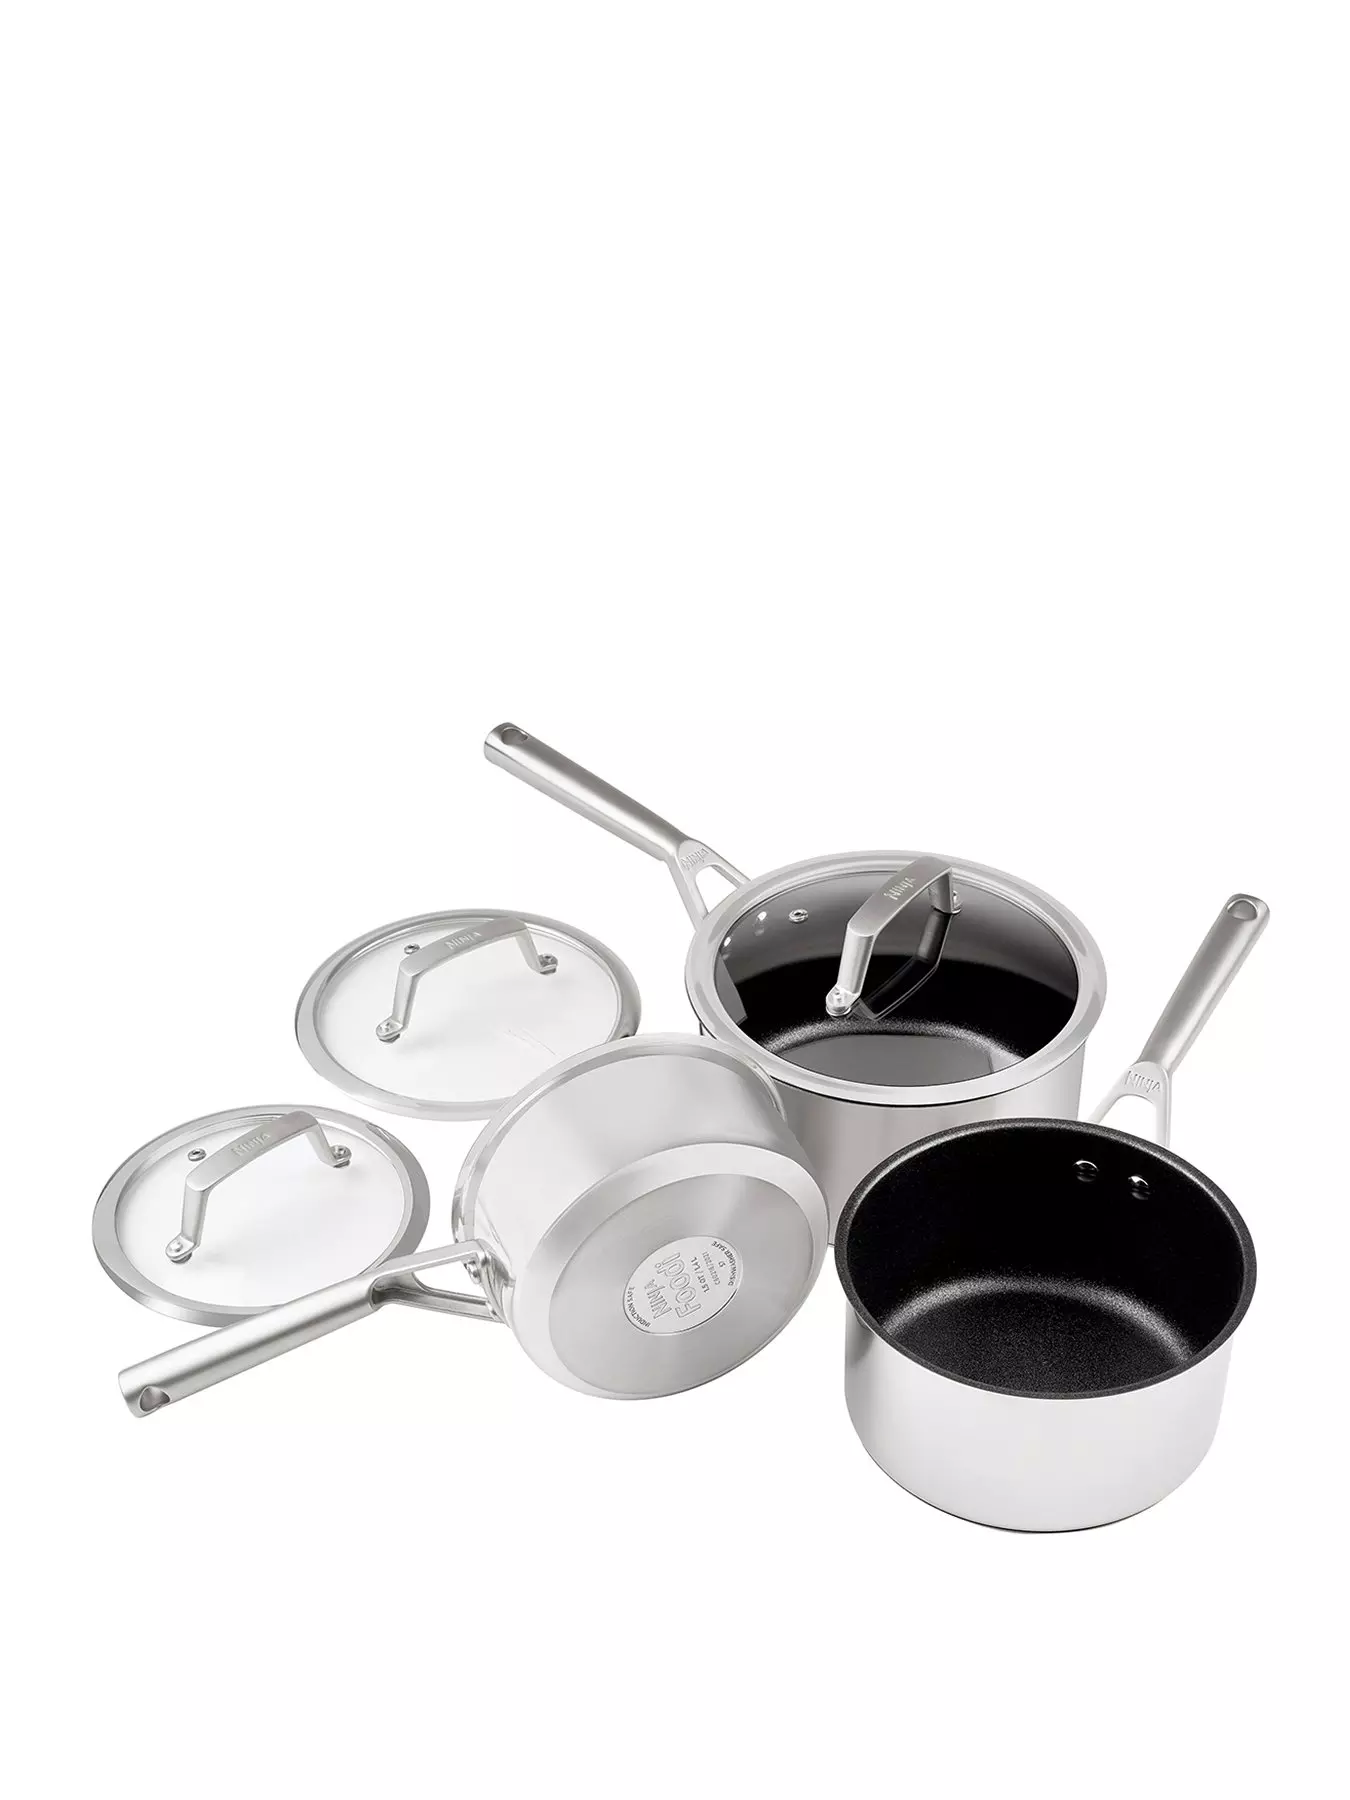 Ninja™ Foodi™ NeverStick™ 11-Piece Cookware Set, Guaranteed To